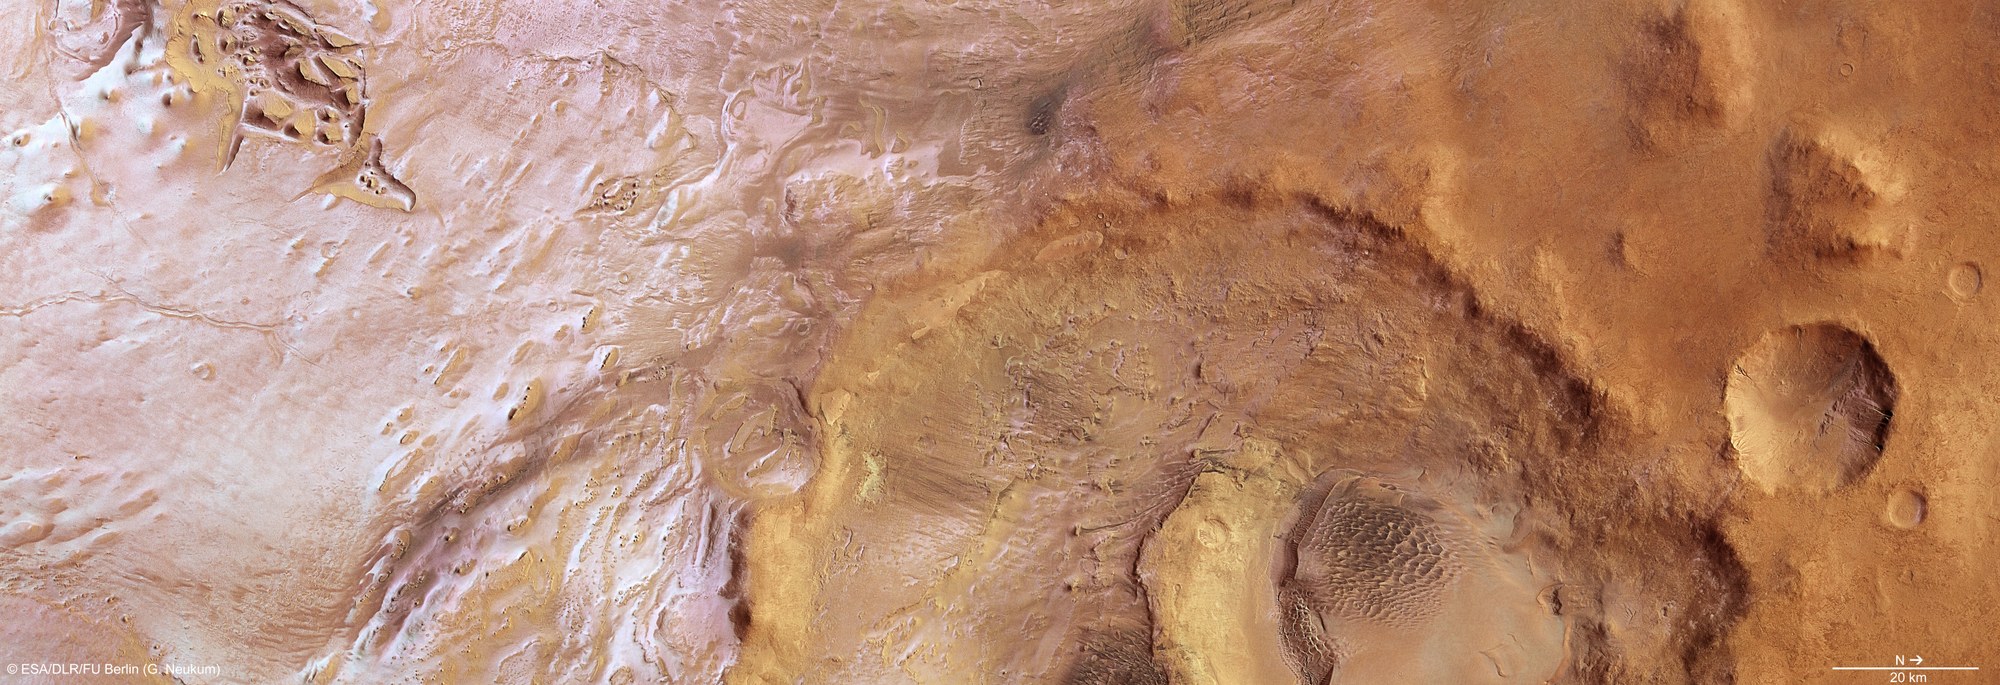 Senkrechte Farb-Draufsicht des Hooke-Kraters